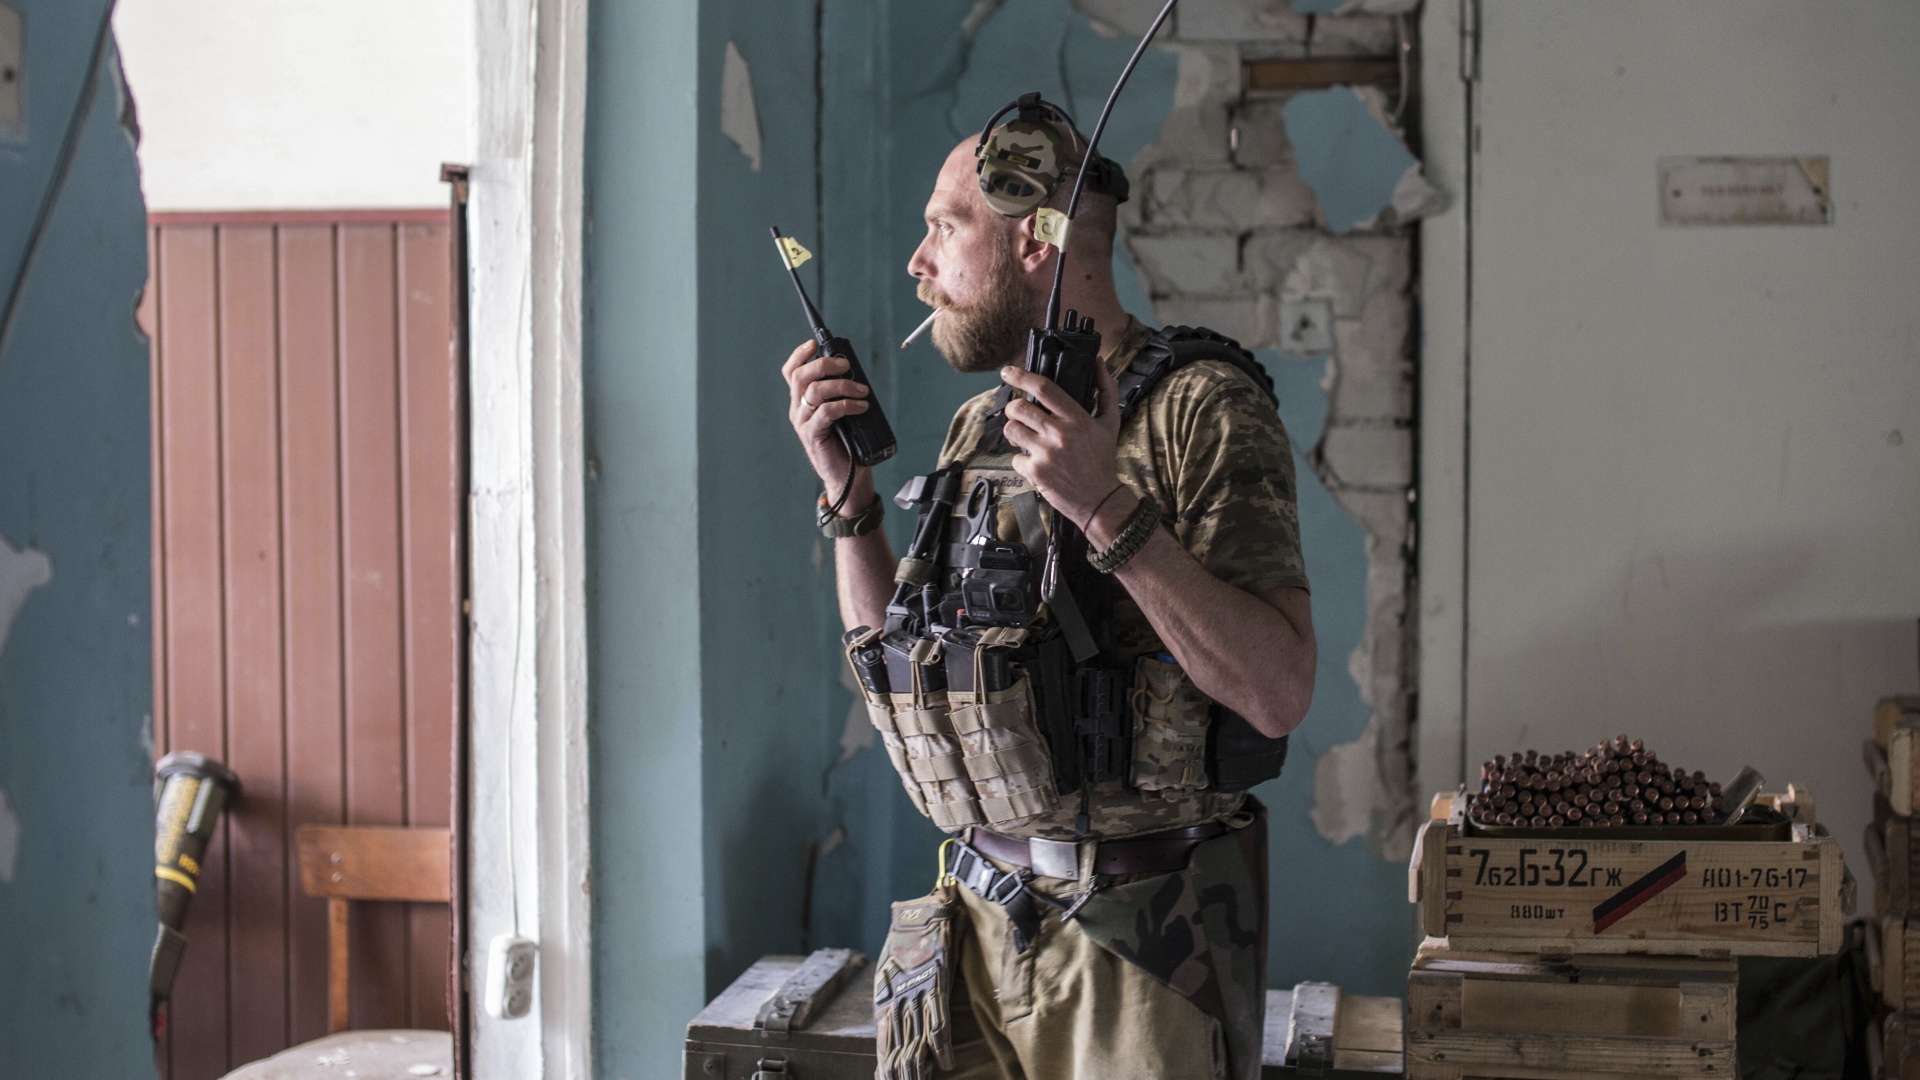  Ein ukrainischer Soldat hält ein Funkgerät. | dpa